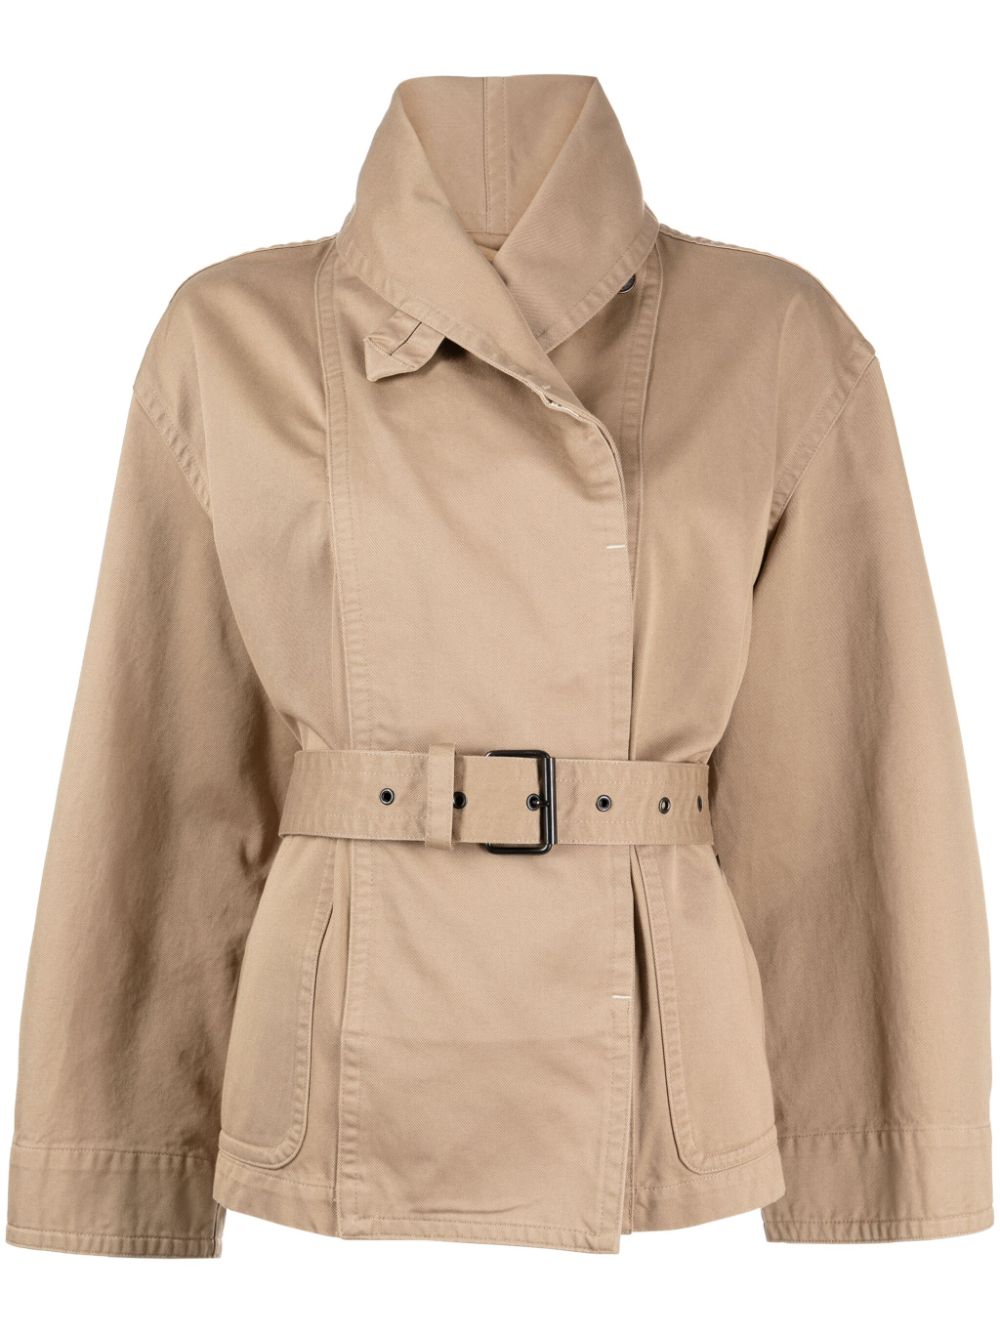 Image 1 of MARANT ÉTOILE belted cotton jacket